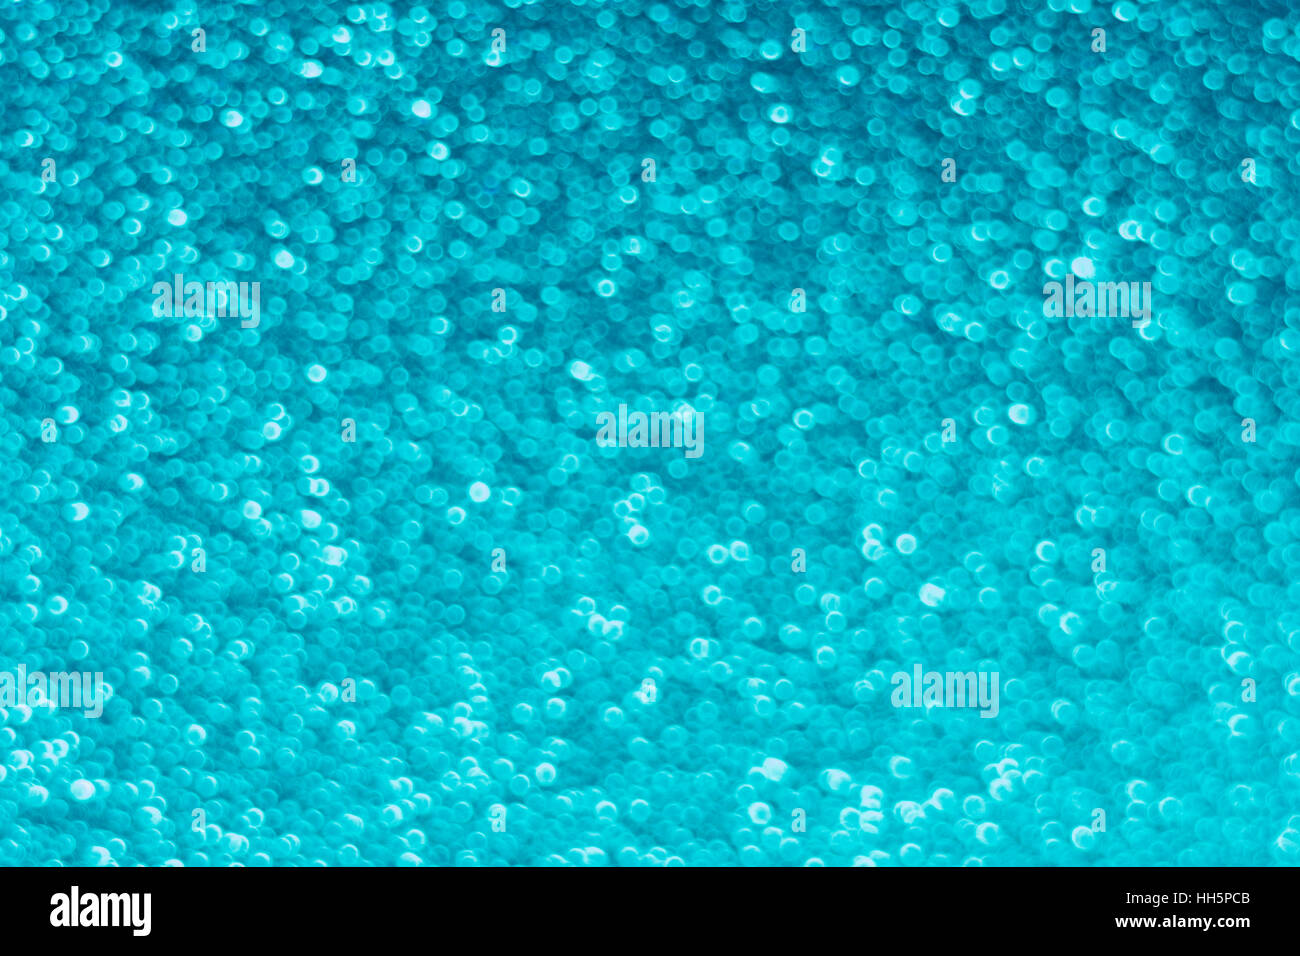 Abstract al di fuori della messa a fuoco dei punti blu che appaiono come piccole bolle - in realtà la superficie di un pezzo di plastica testurizzata. Foto Stock